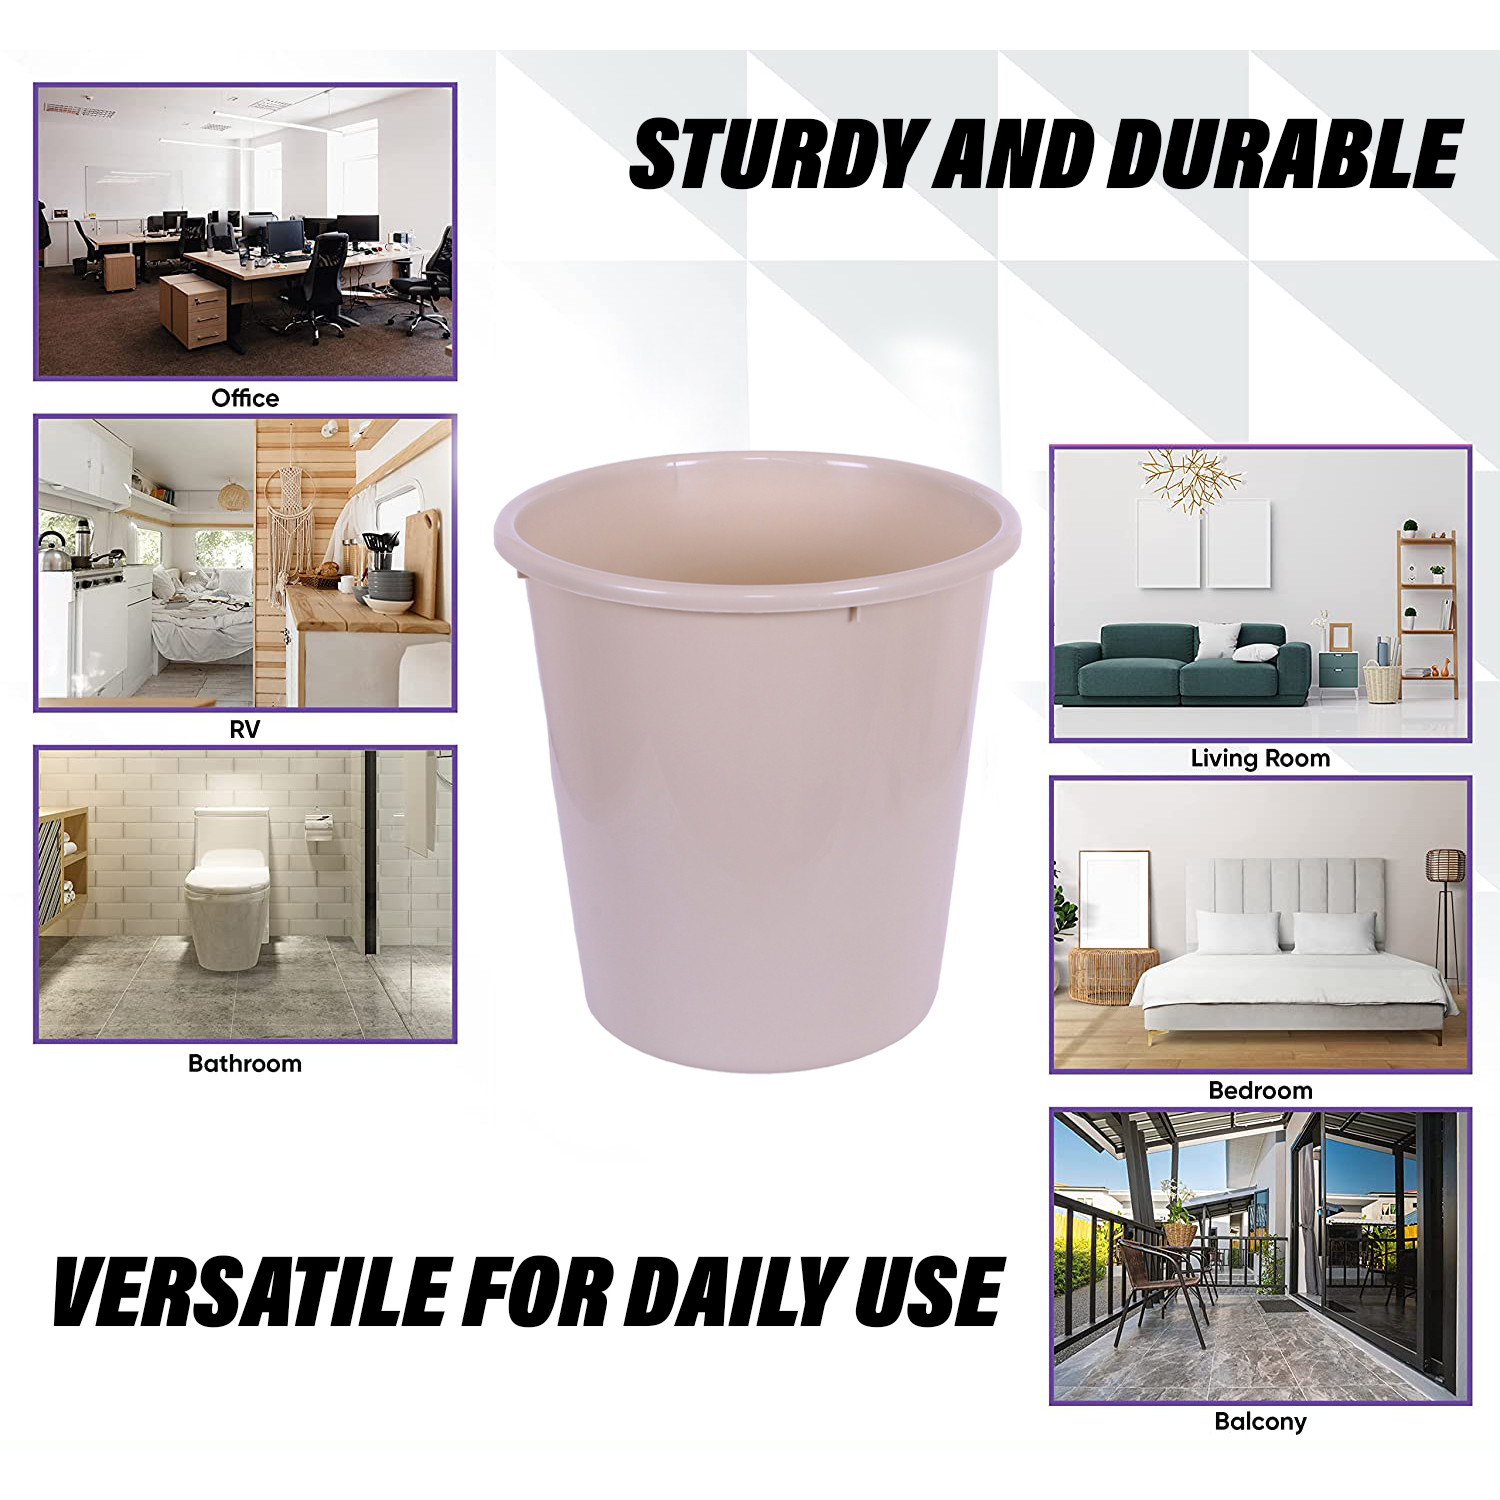 Kuber Industries Dustbin | Open Dustbin | Plastic Garbage Dustbin | Dustbin For Kitchen | Dustbin For Bathroom | Office Dustbin | Plain Sada Dustbin | 10 LTR | Beige